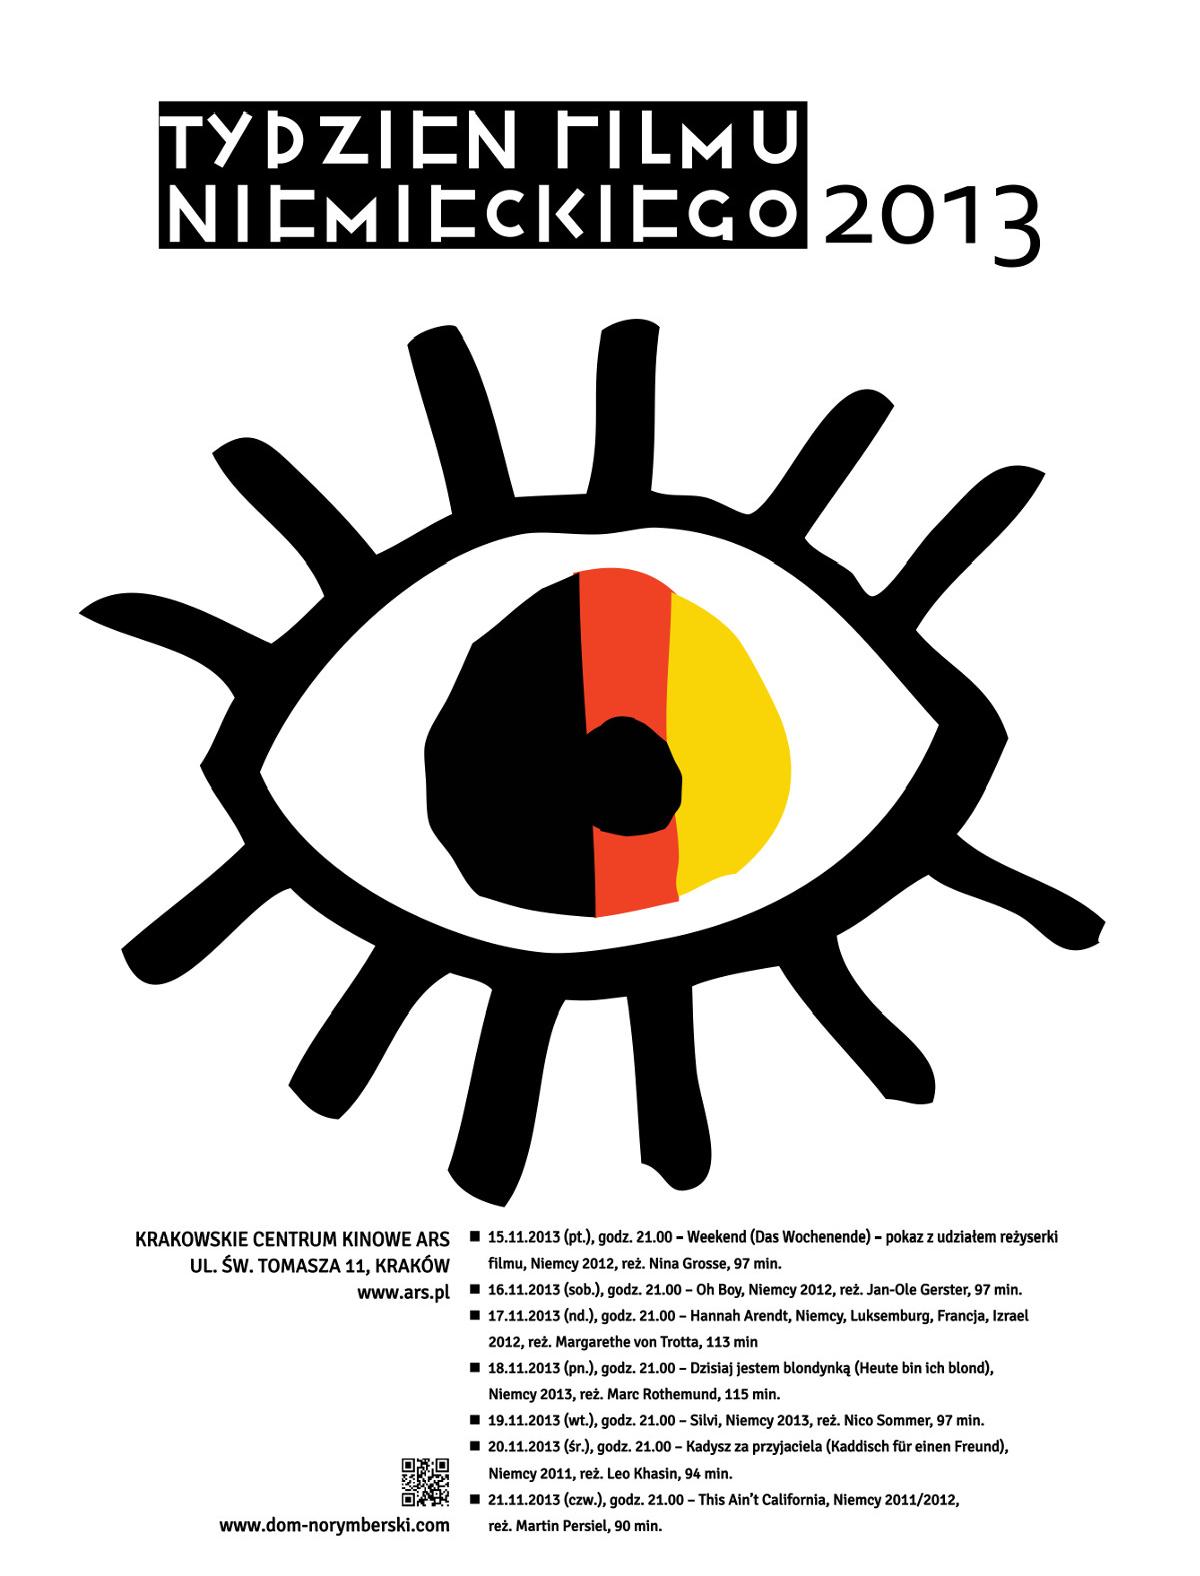 Tydzień Filmu Niemieckiego, Krakowskie Centrum Kinowe ARS, plakat (źródło: materiały prasowe)